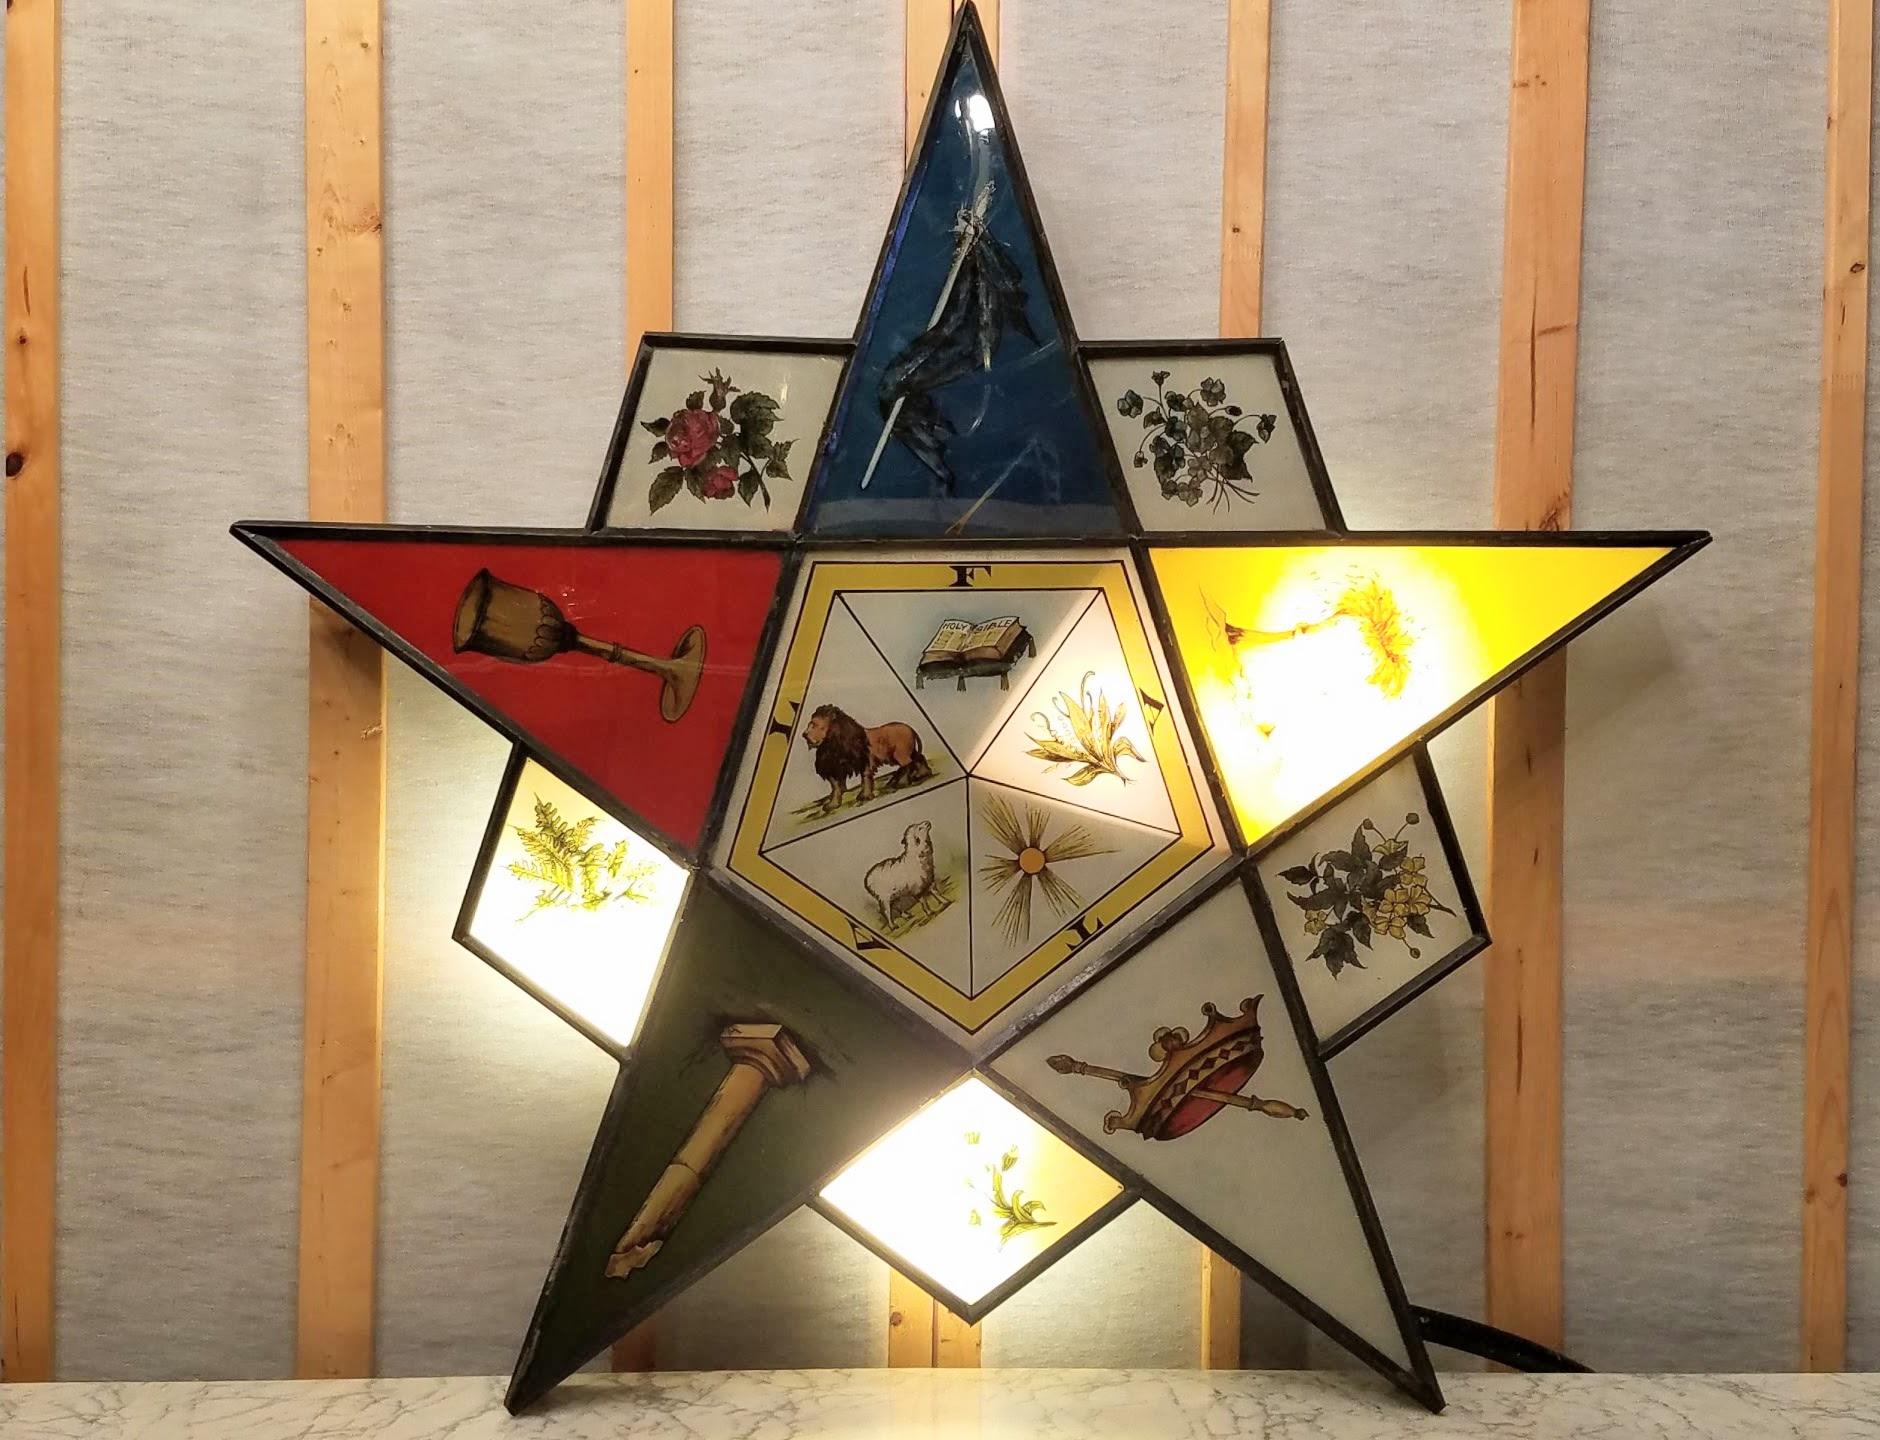 Enseigne lumineuse en fer-blanc avec une peinture inversée sur étoile en verre pour l'Eastern Star du Temple maçonnique des années 1920.
L'enseigne est présentée montée sur son trépied d'origine en tube métallique qui roule sur des roues en bois et